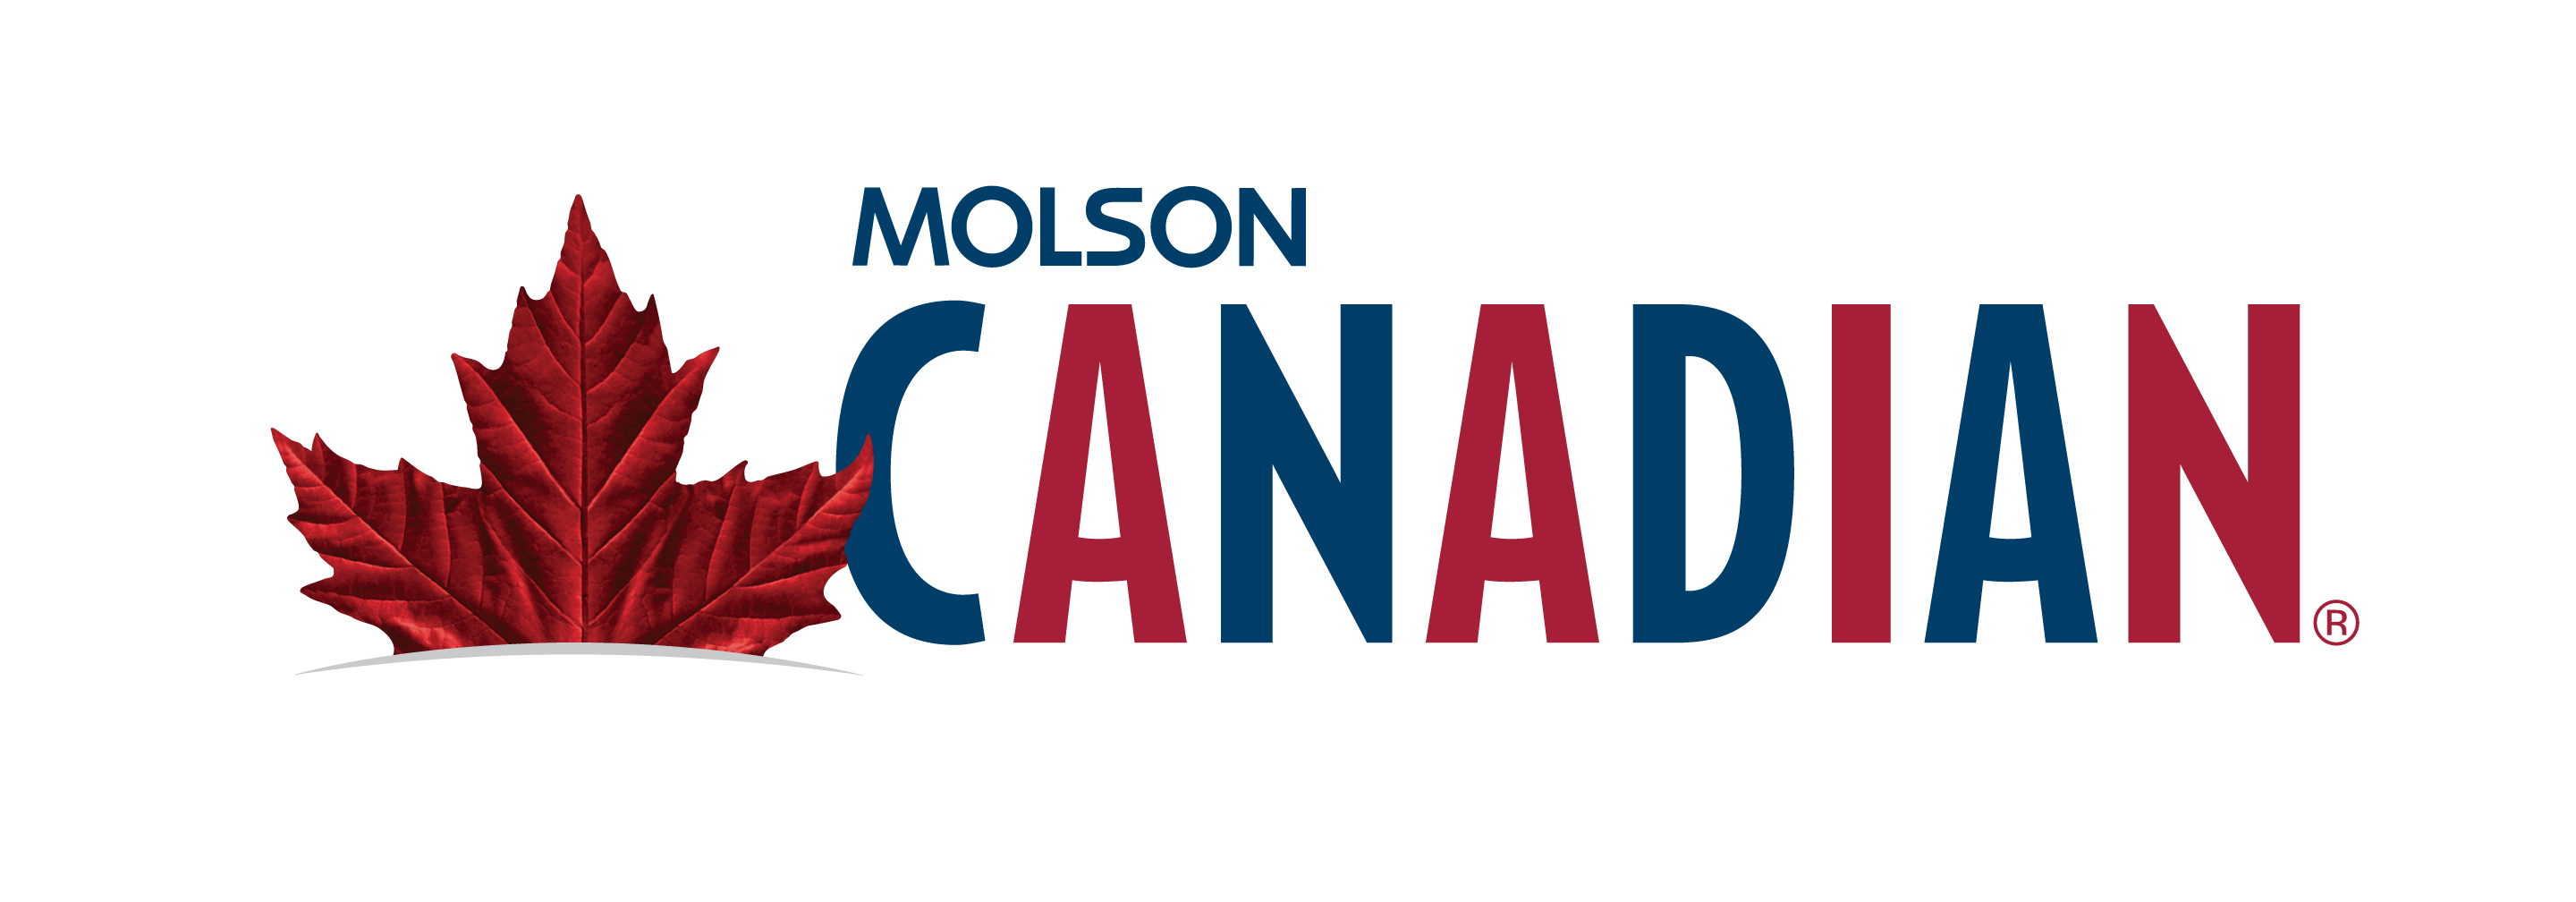 molson-canadian-logo